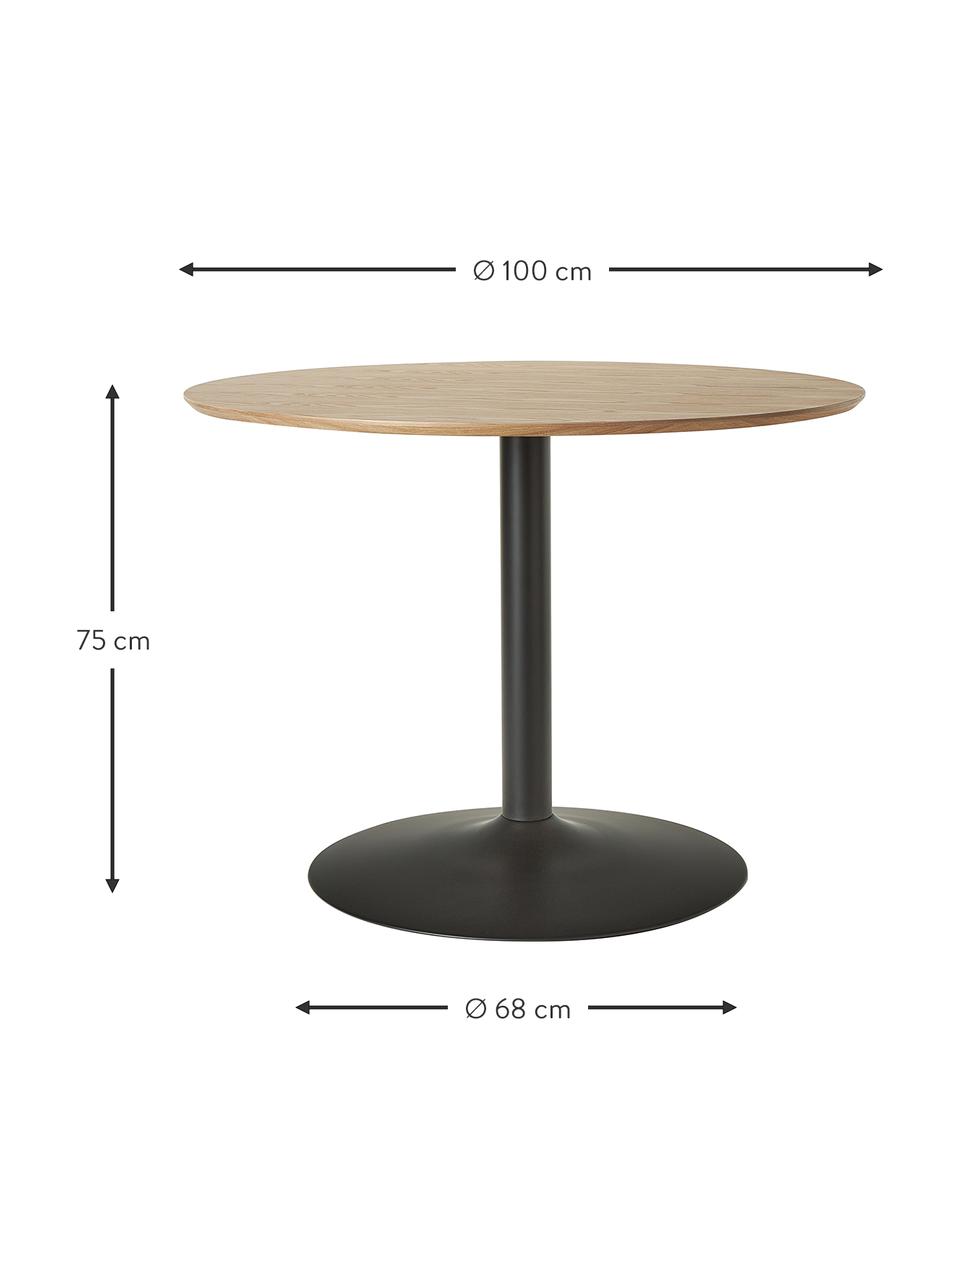 Kulatý jídelní stůl s jasanovou dýhou Menorca, Ø 100 cm, Světle hnědá, černá, Ø 100 cm, V 75 cm